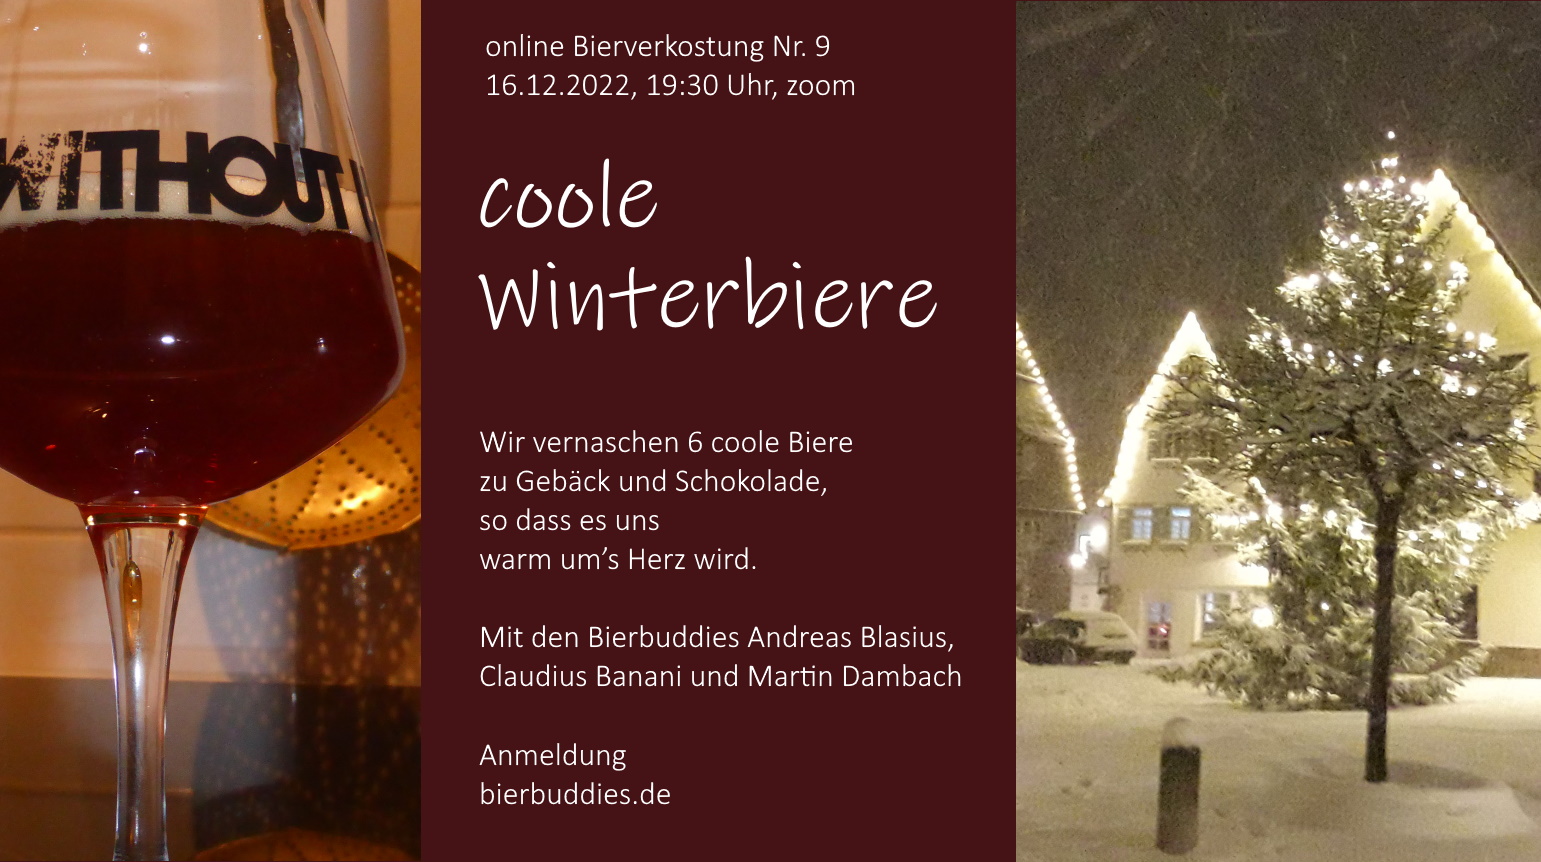 9. Bier online tasting: coole Winterbiere